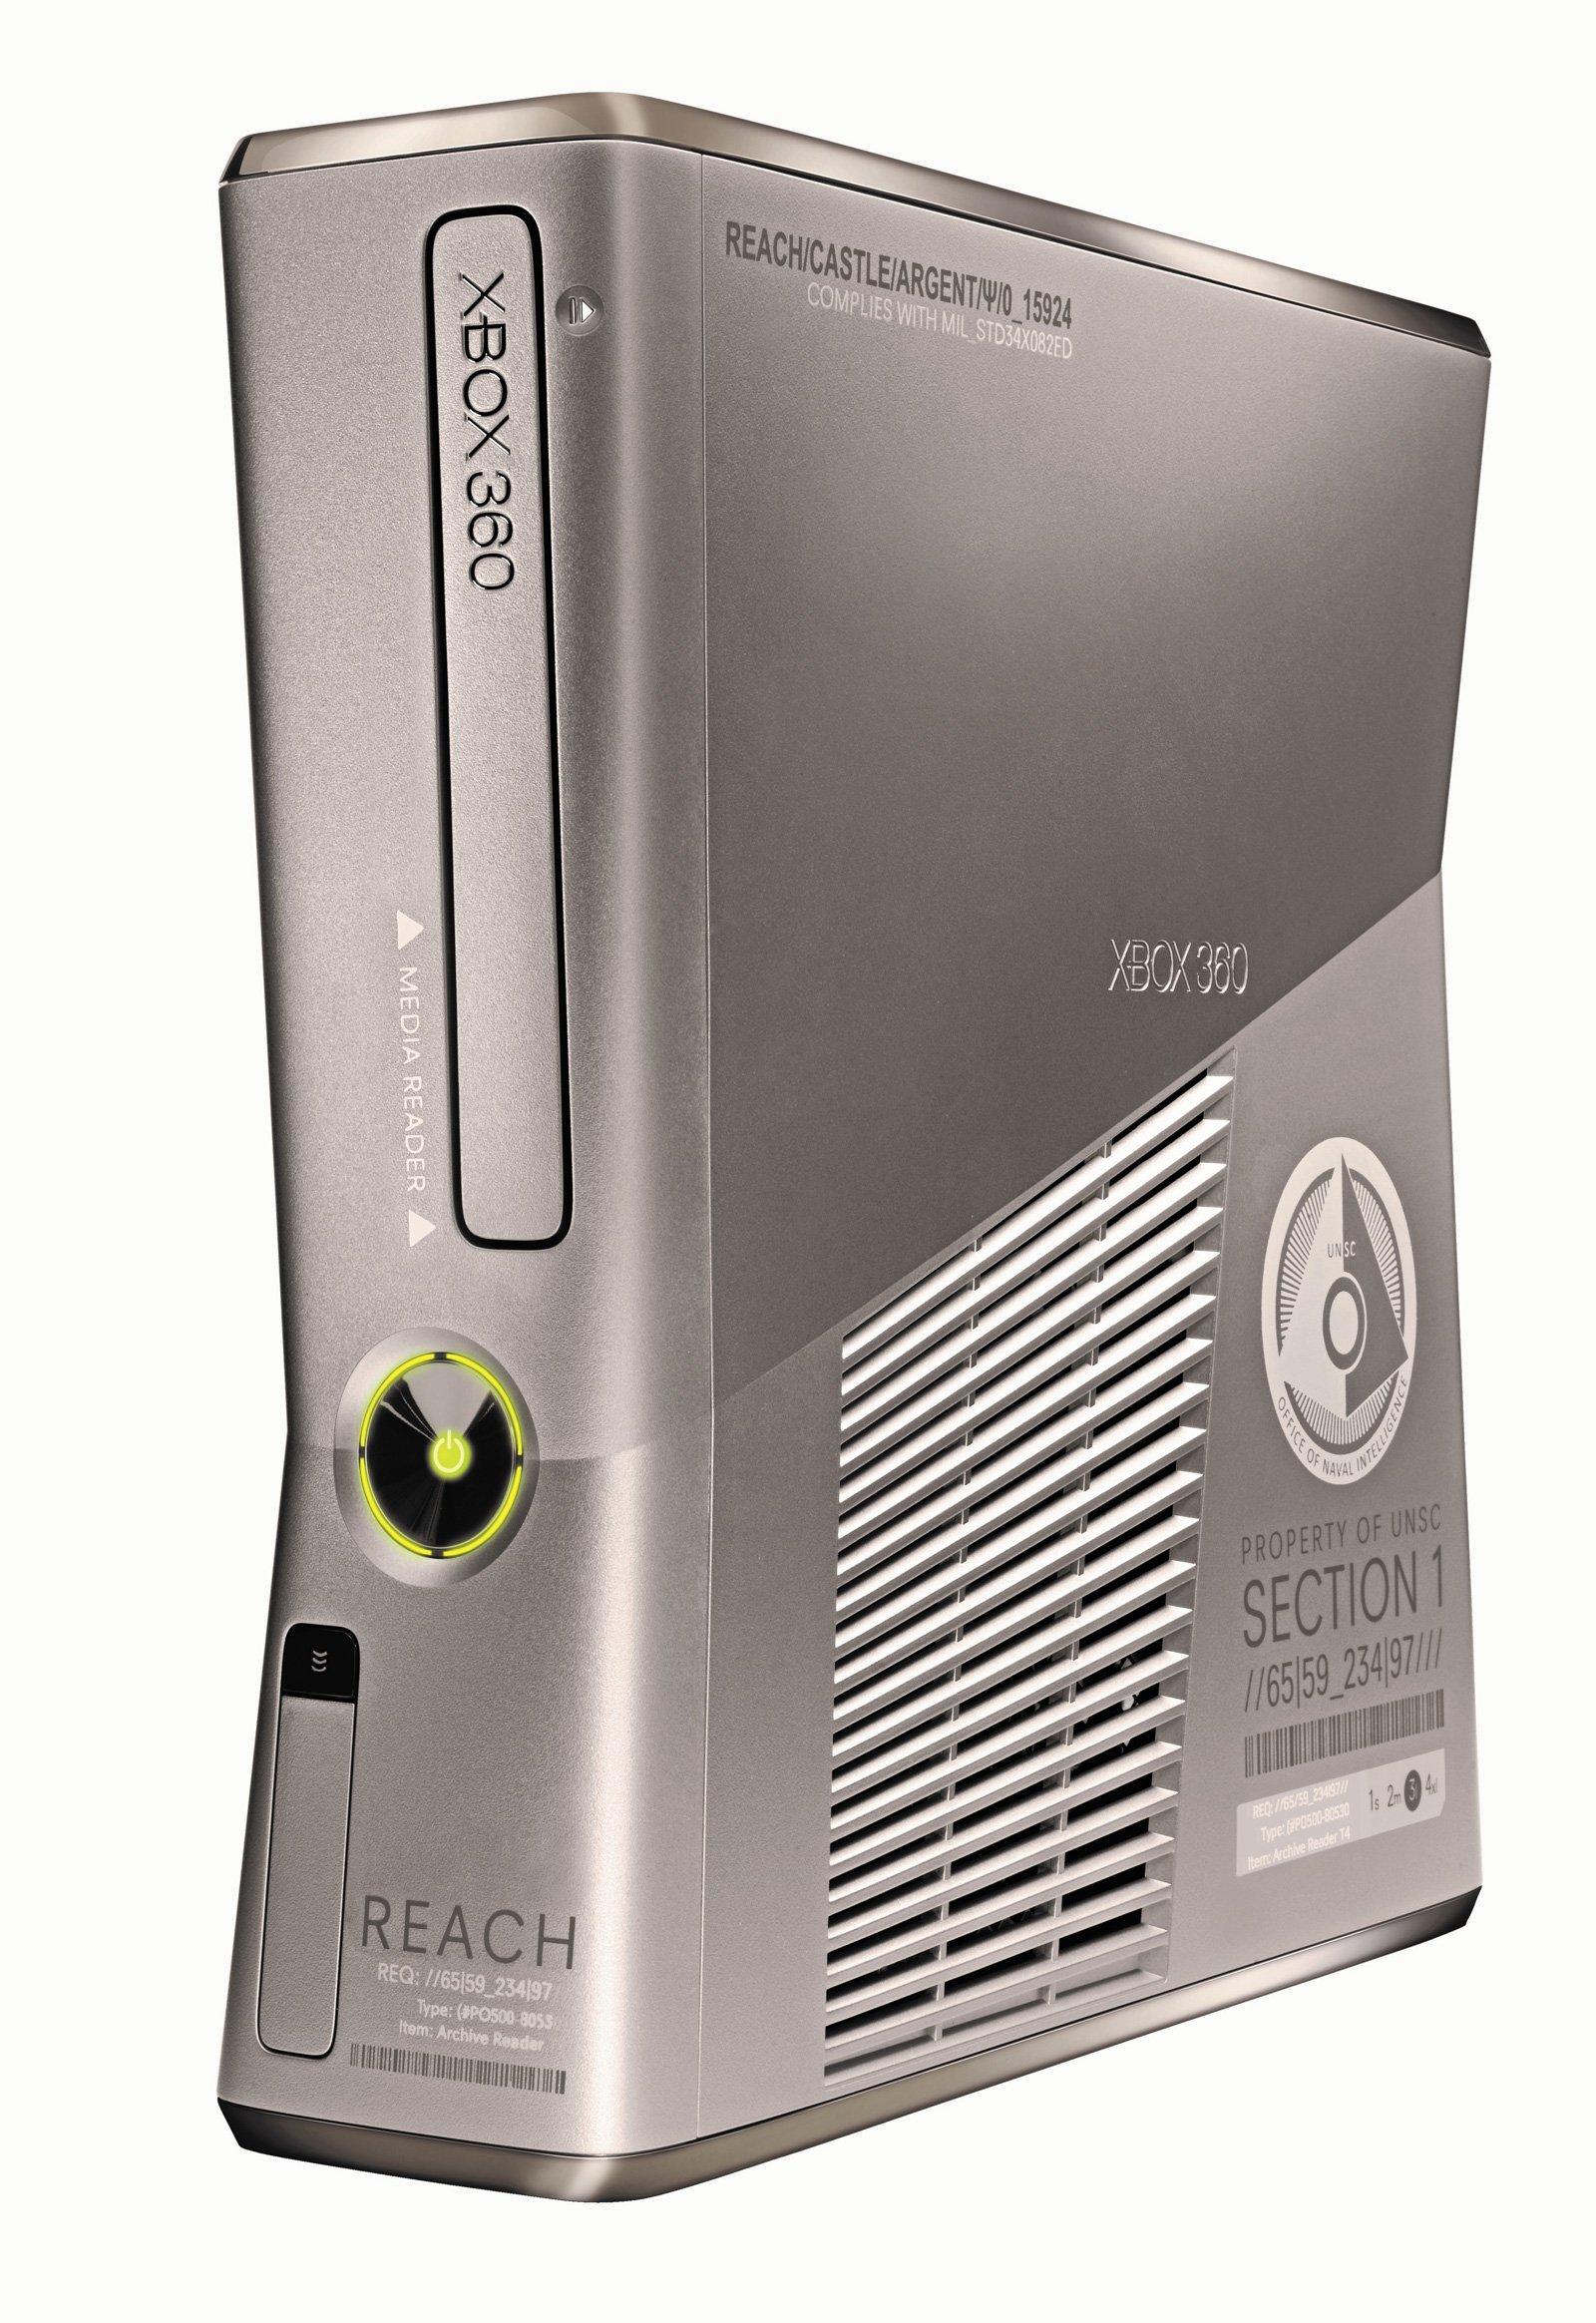 Console Xbox 360 + 250gb (SEMI-NOVO)